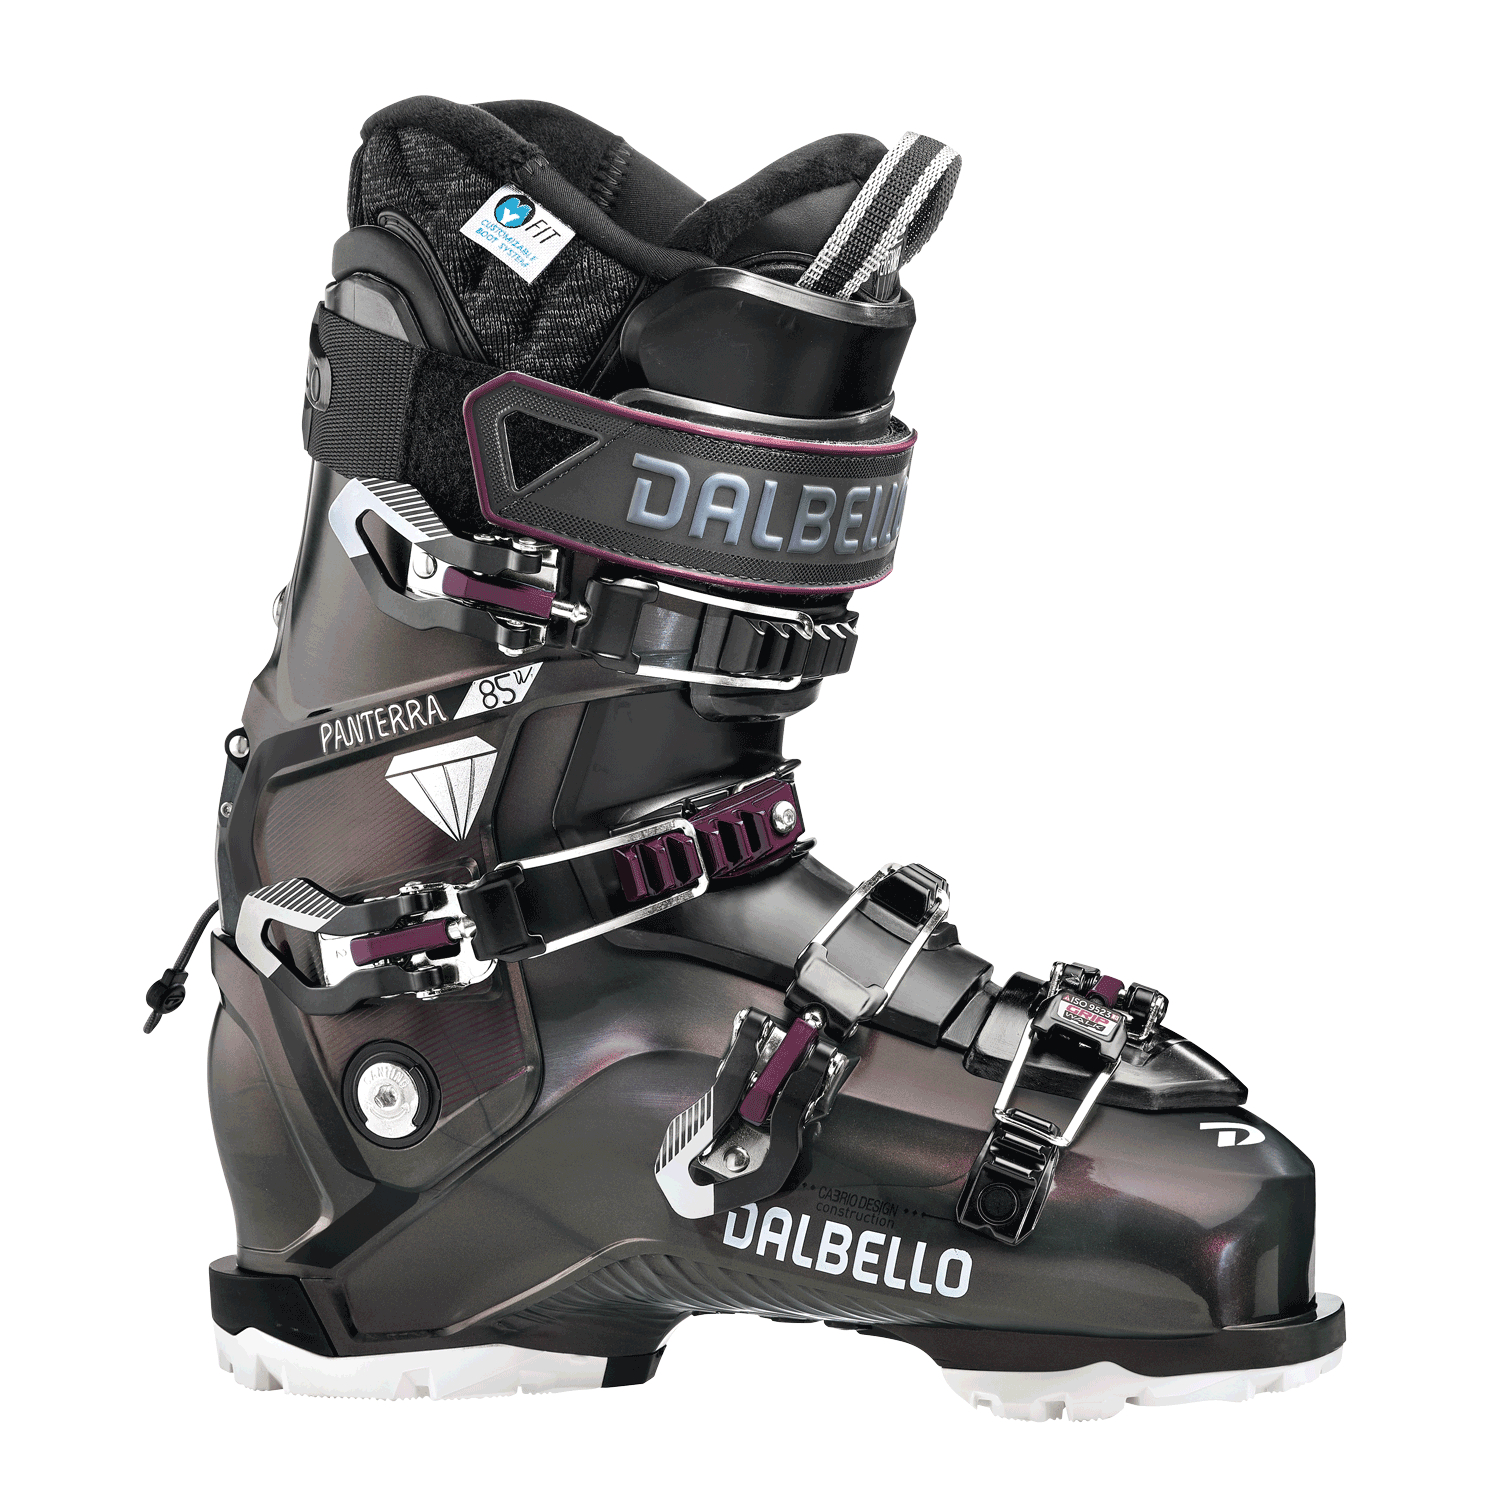 Отзывы универсальные лыжные ботинки Dalbello Panterra 85 W GW Malva/Burgundi (245) в Украине